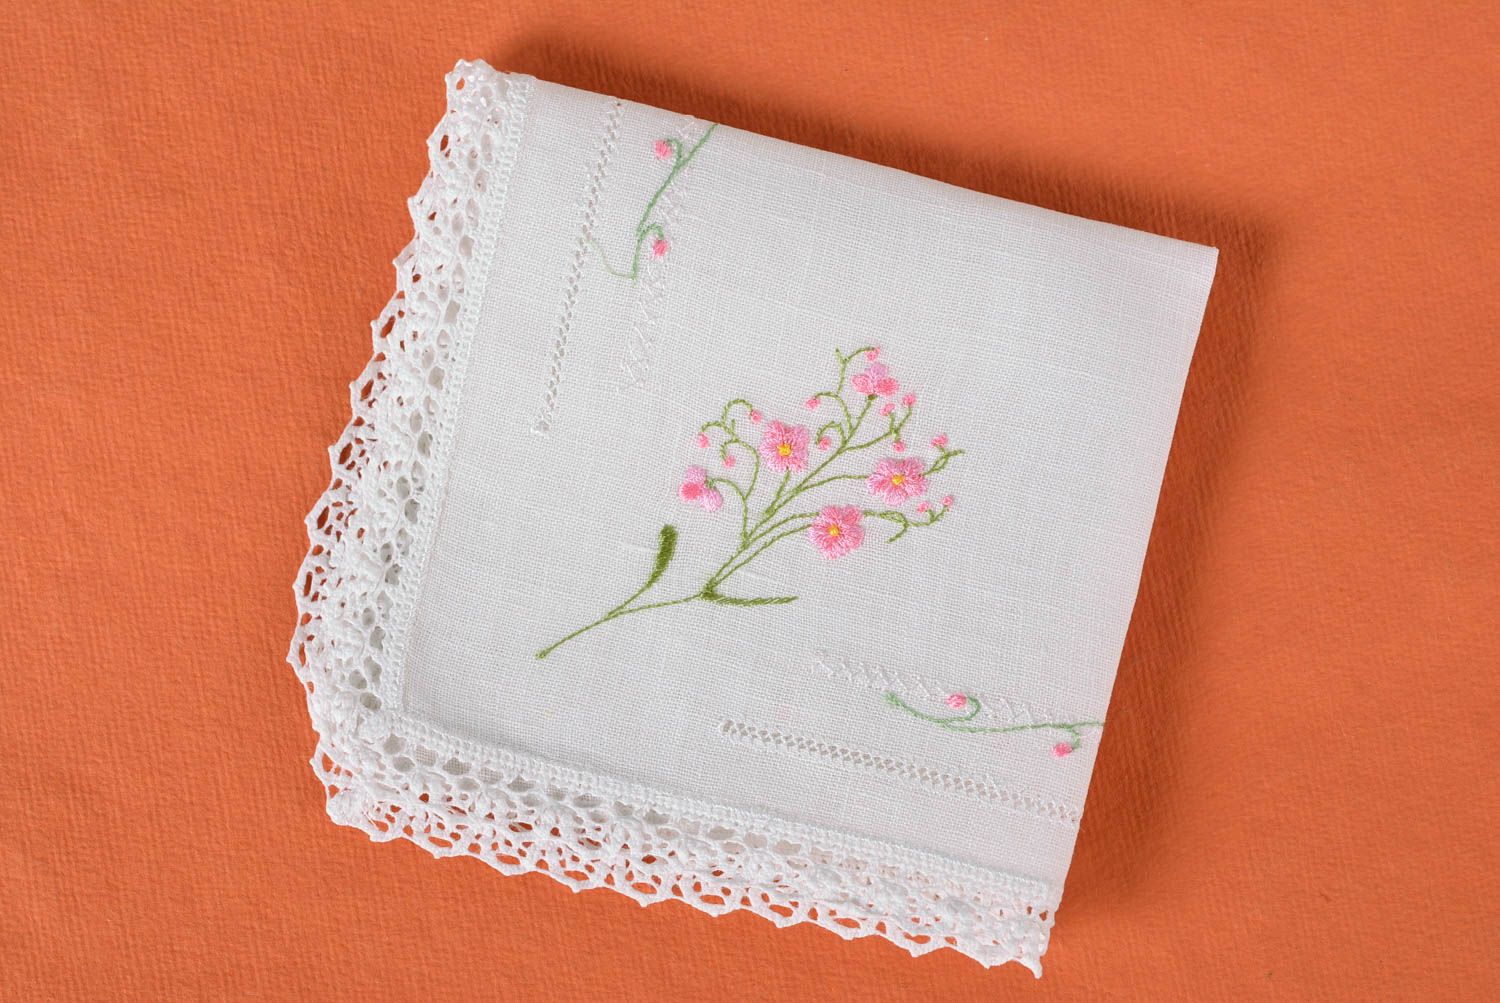 Mouchoir en tissu fait main Accessoire femme blanc carré avec fleurs Idée cadeau photo 1